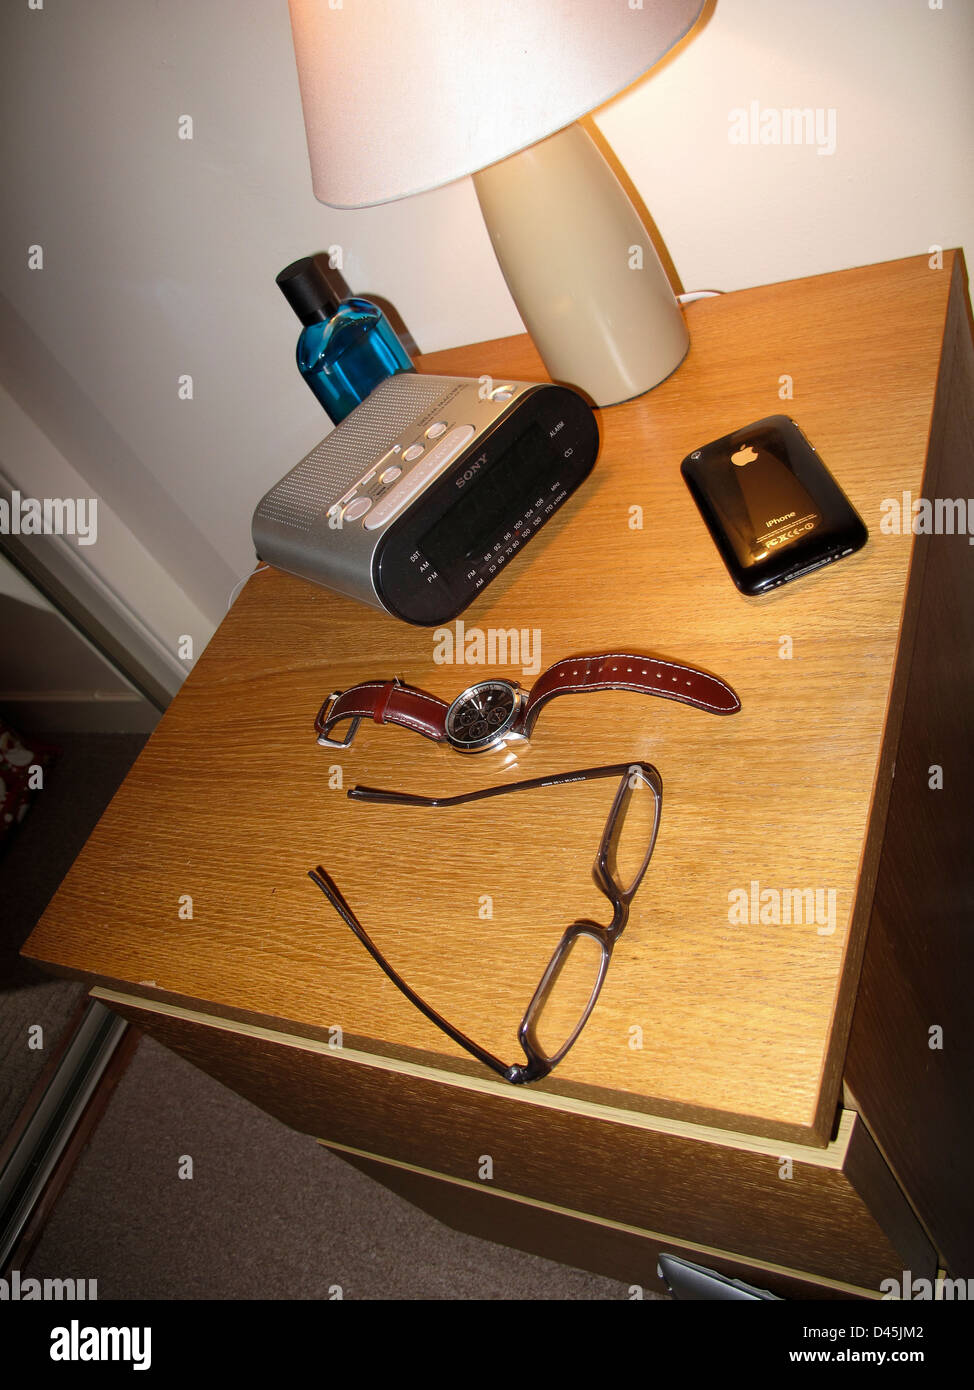 Nachttisch mit Lampe Radiowecker Gläser und iPhone Stockfoto